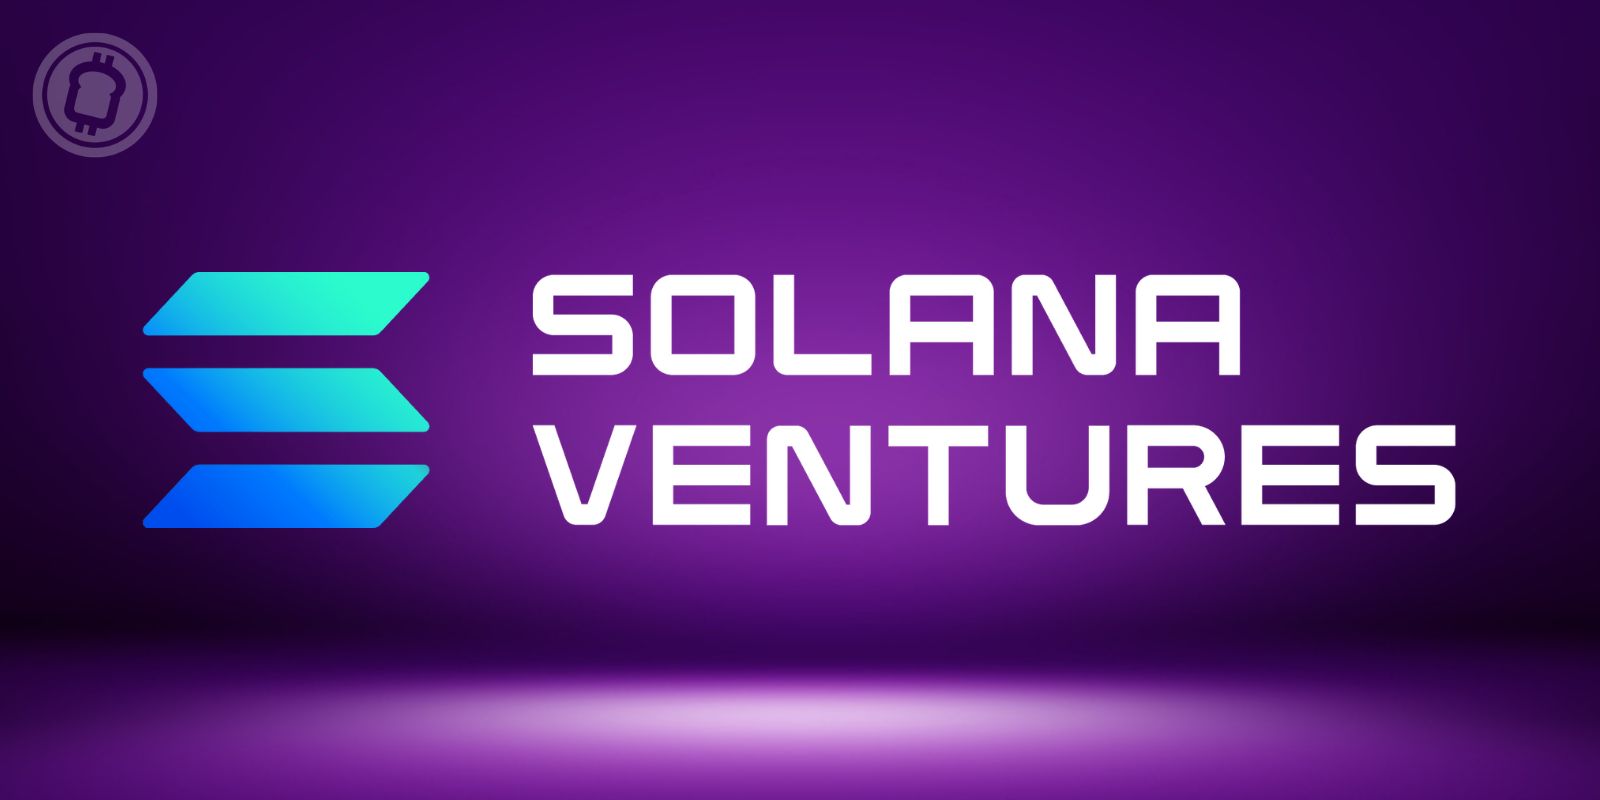 Solana Ventures lance un fonds de 100 millions de dollars en Corée du Sud